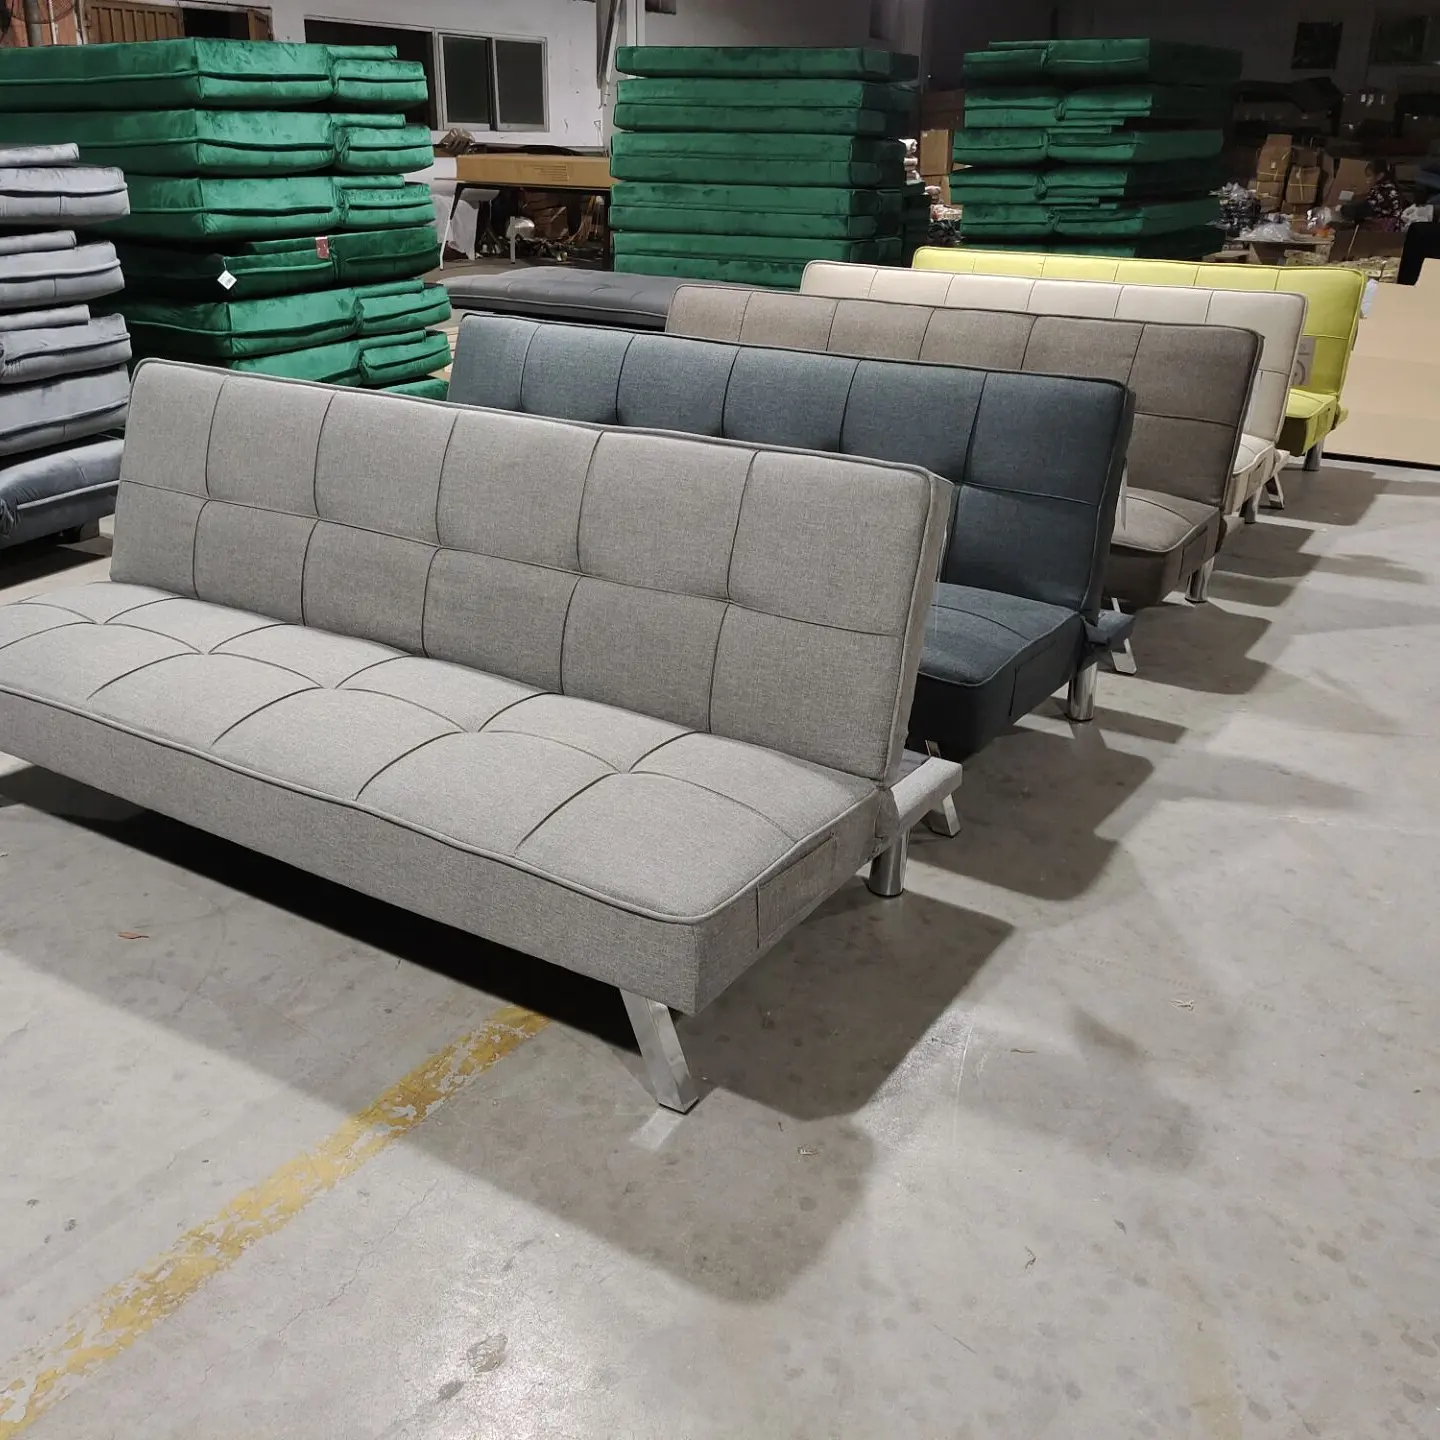 Großhandel Klappstuhl Sleeper Modern Fabric Couch Mehrzweck Love Seat Schlafs ofa